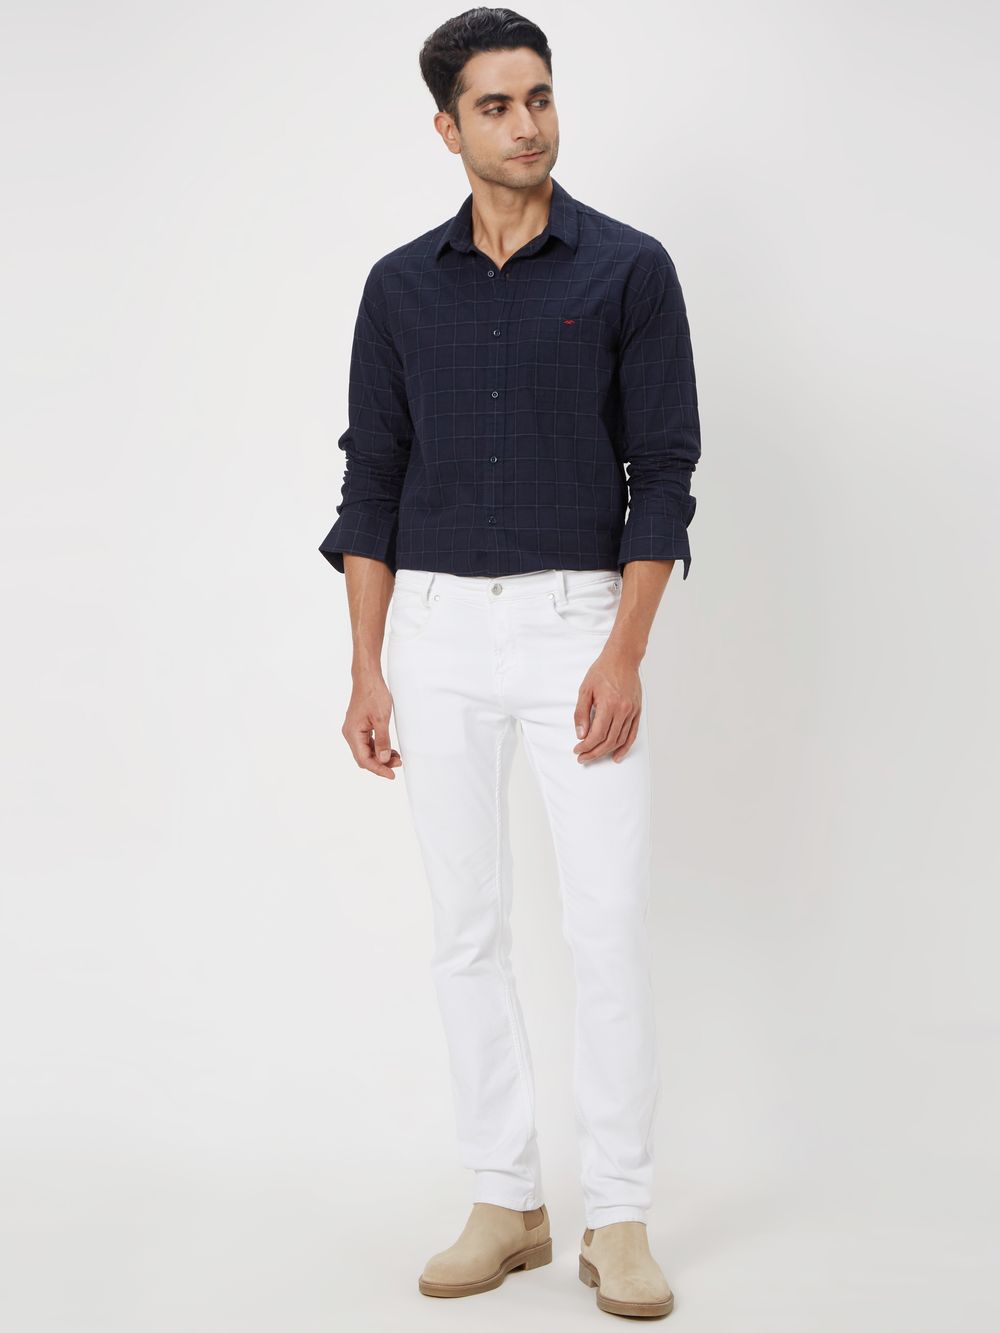 Navy & White Windowpane Check Slim Fit Casual Shirt